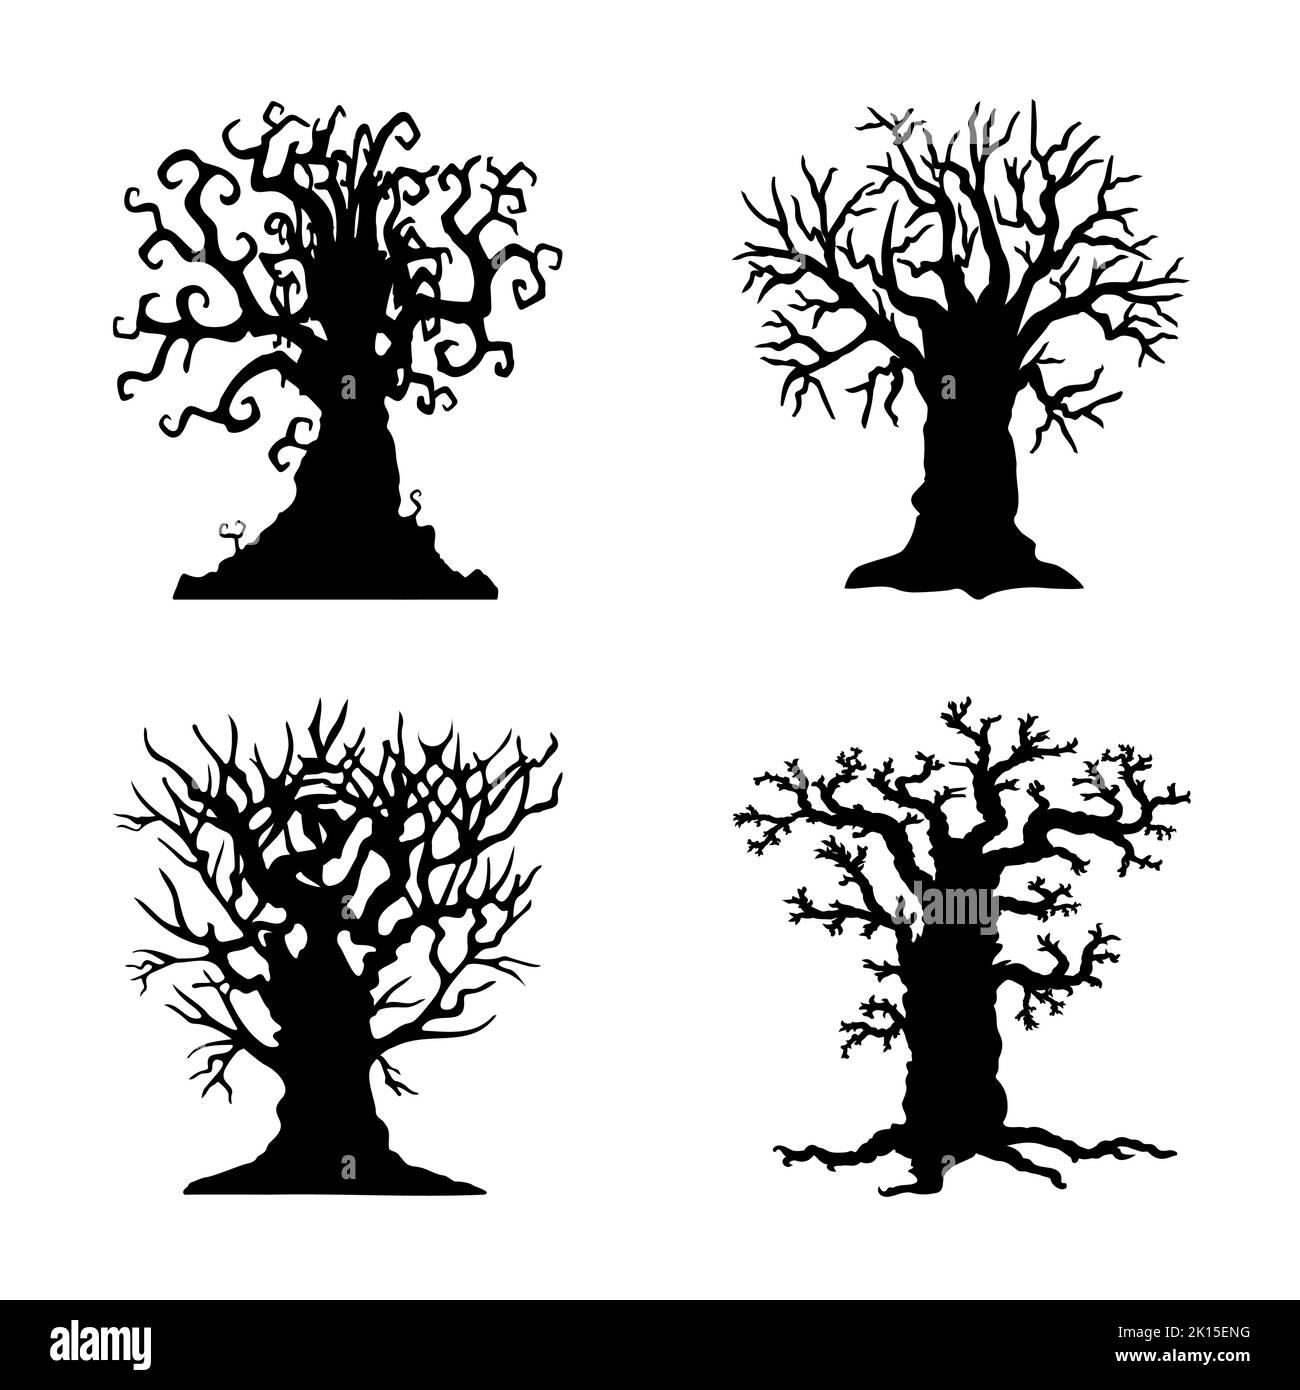 Gruselige Halloween Baum Silhouette Stile Vektor Illustration Icon Set Stock Vektor